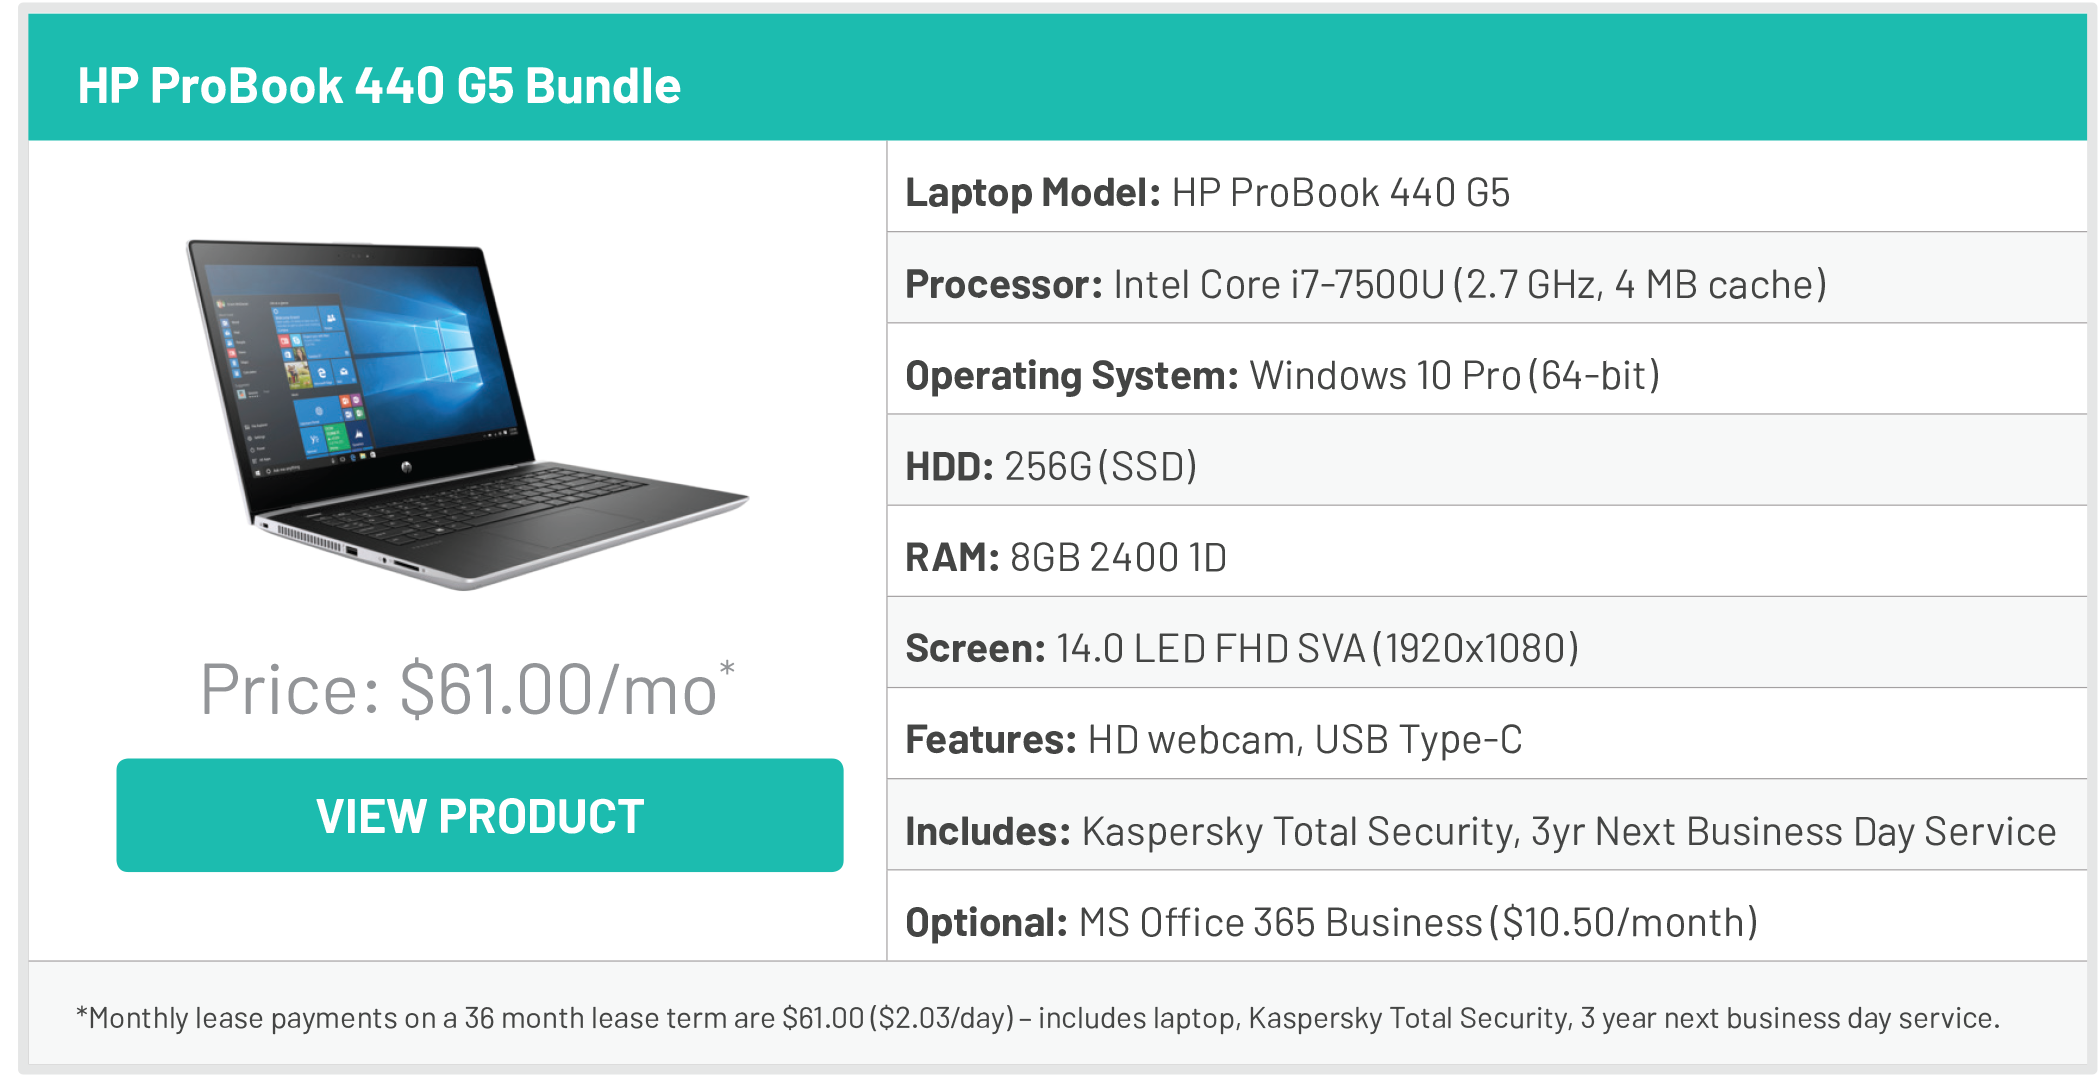 HP ProBook 440 G5 Bundle